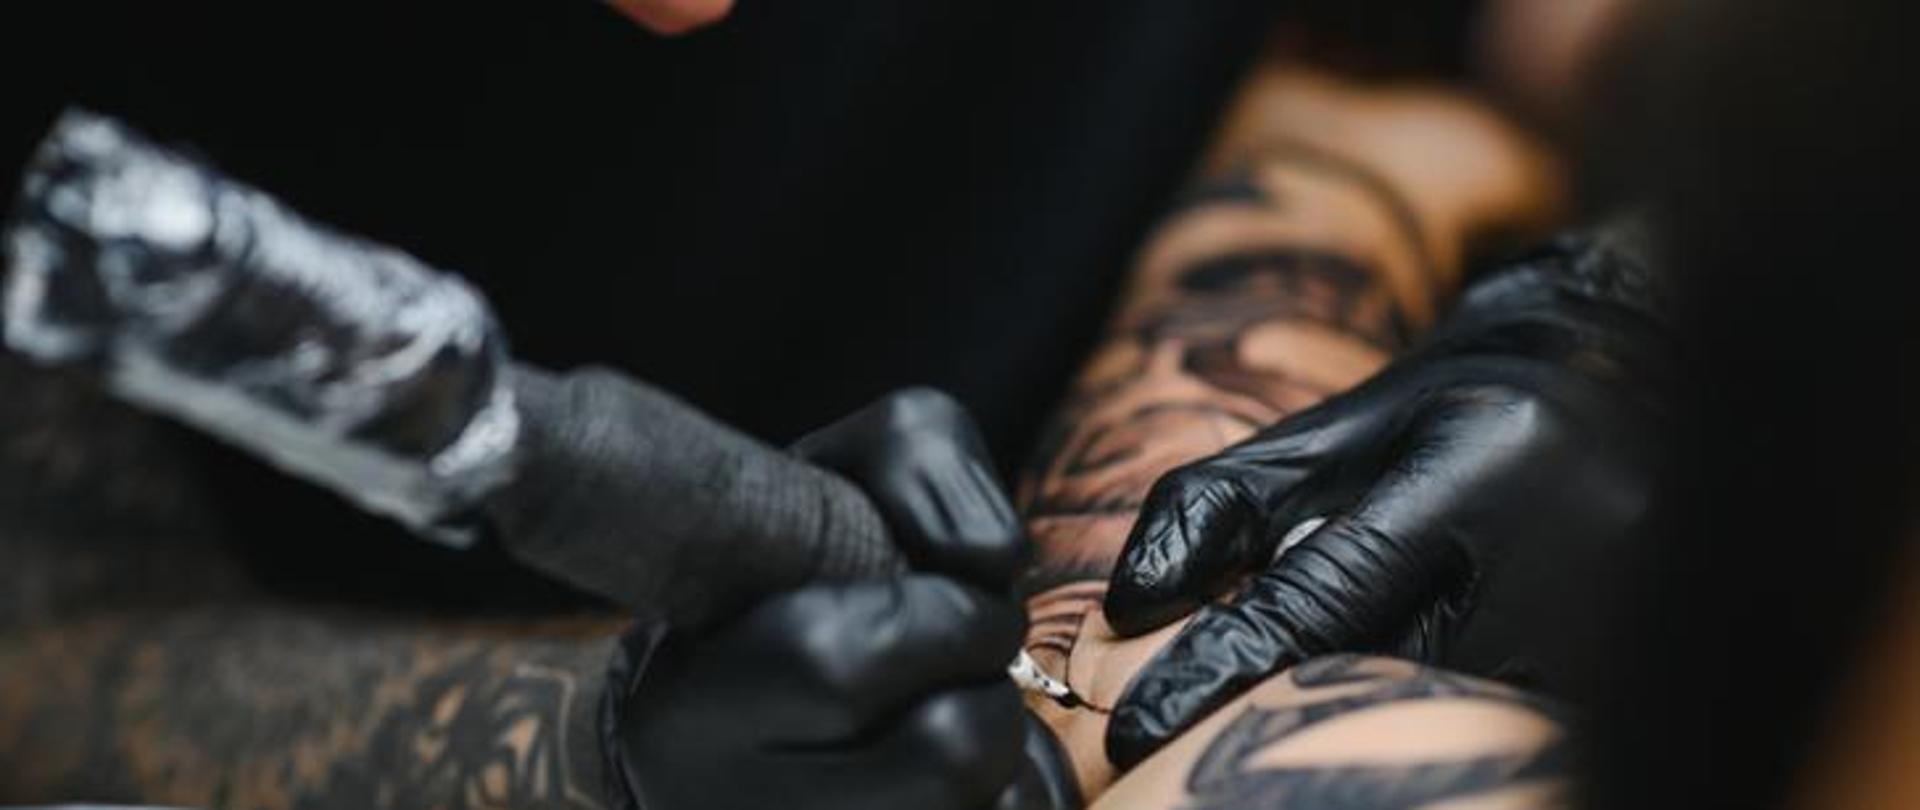 Na zdjęciu przedstawiono dłonie tatuażysty wykonującego tatuaż.